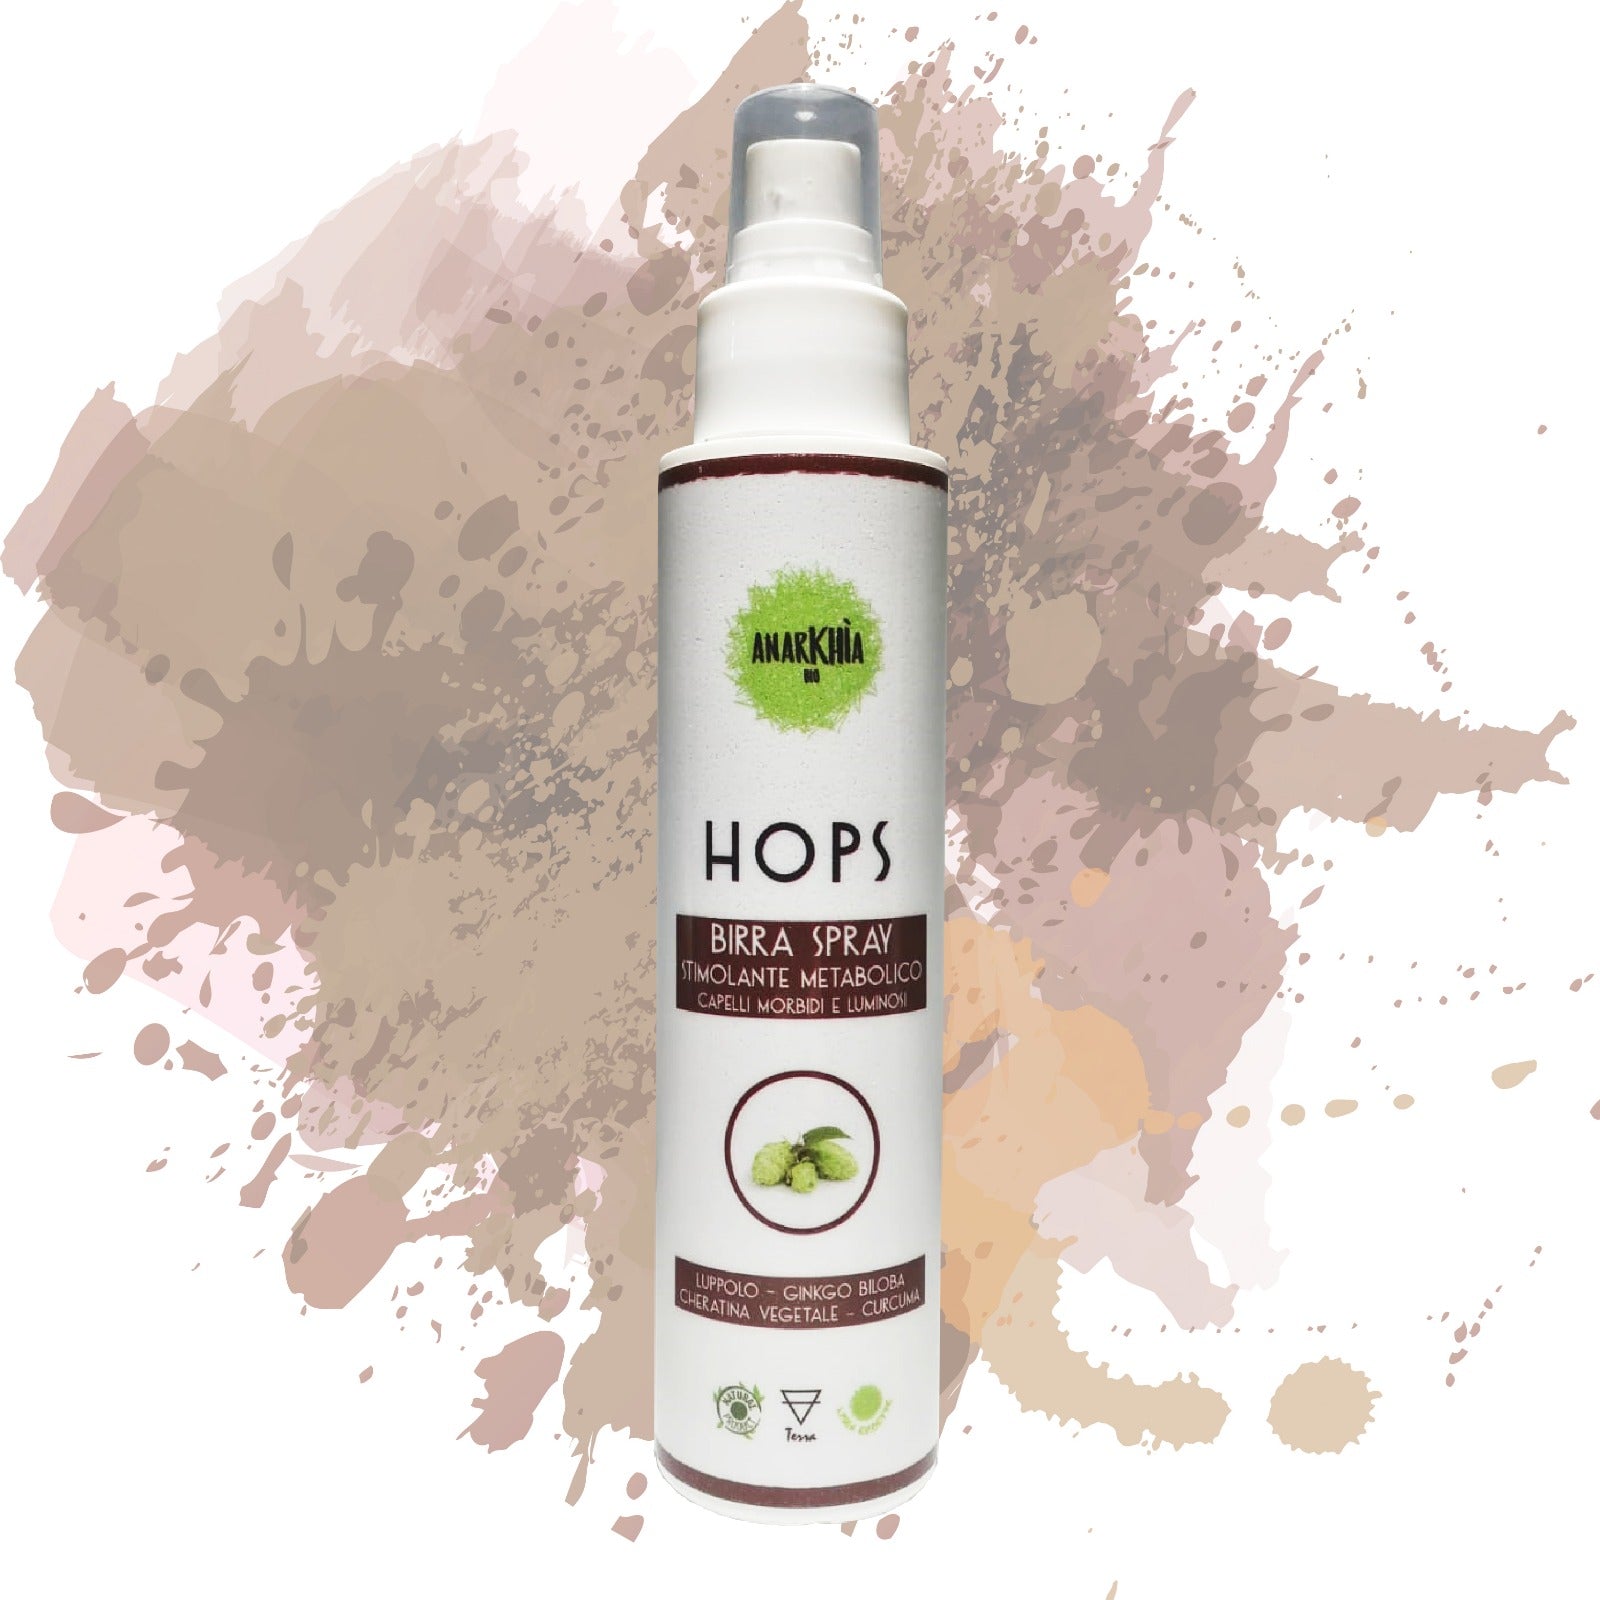 Hops Birra Spray – Stimolante cuoio capelluto